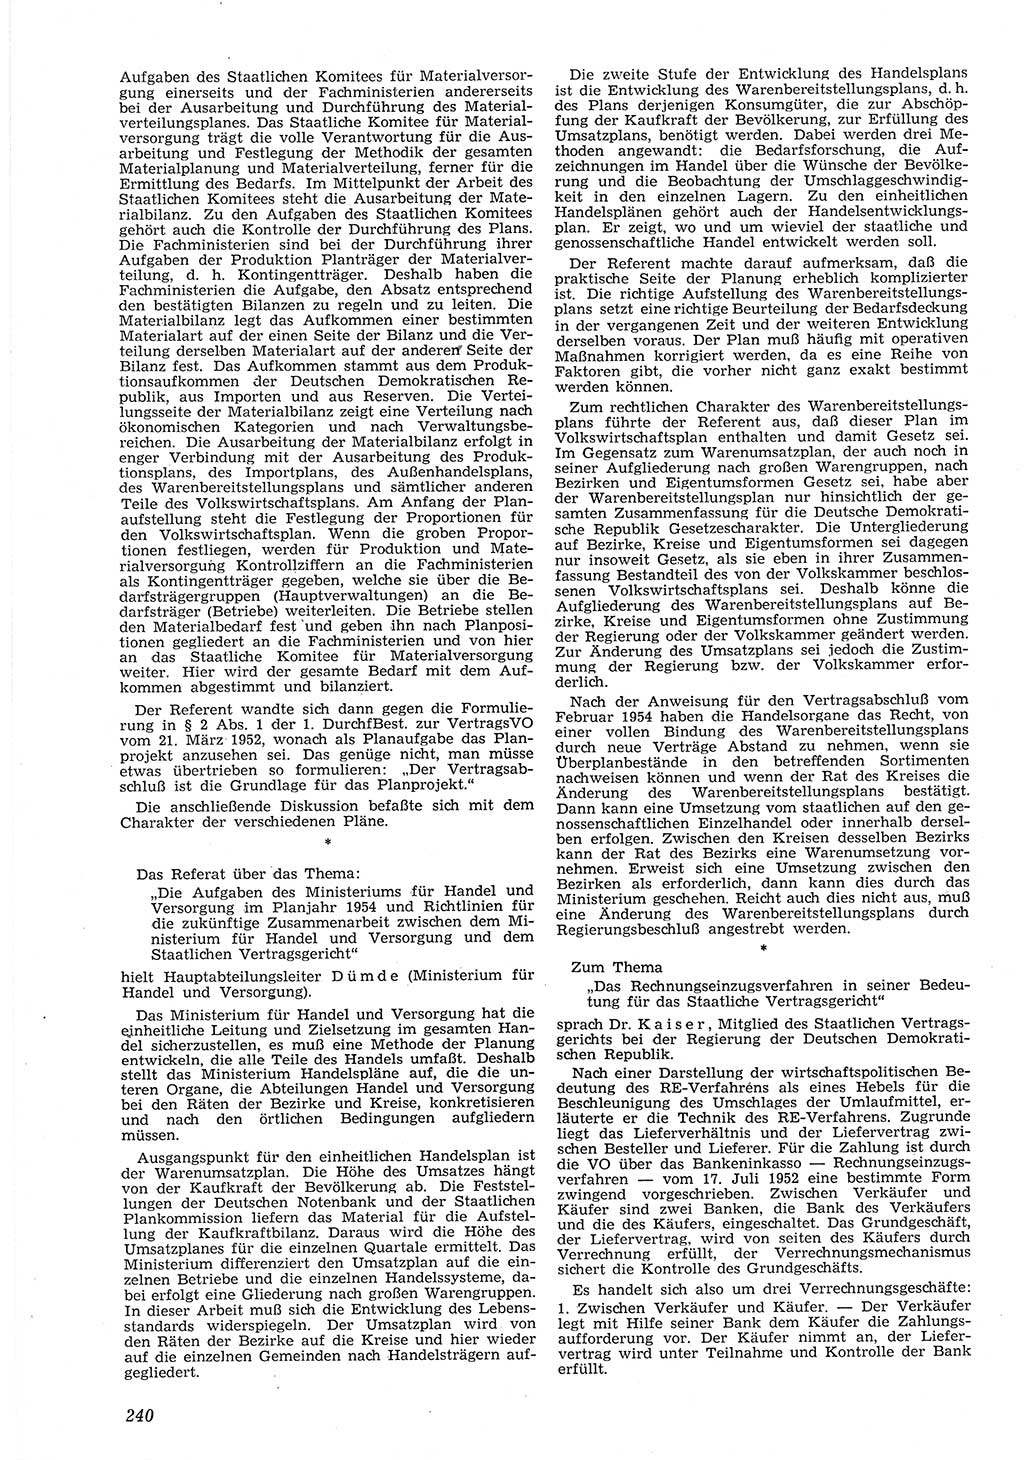 Neue Justiz (NJ), Zeitschrift für Recht und Rechtswissenschaft [Deutsche Demokratische Republik (DDR)], 8. Jahrgang 1954, Seite 240 (NJ DDR 1954, S. 240)